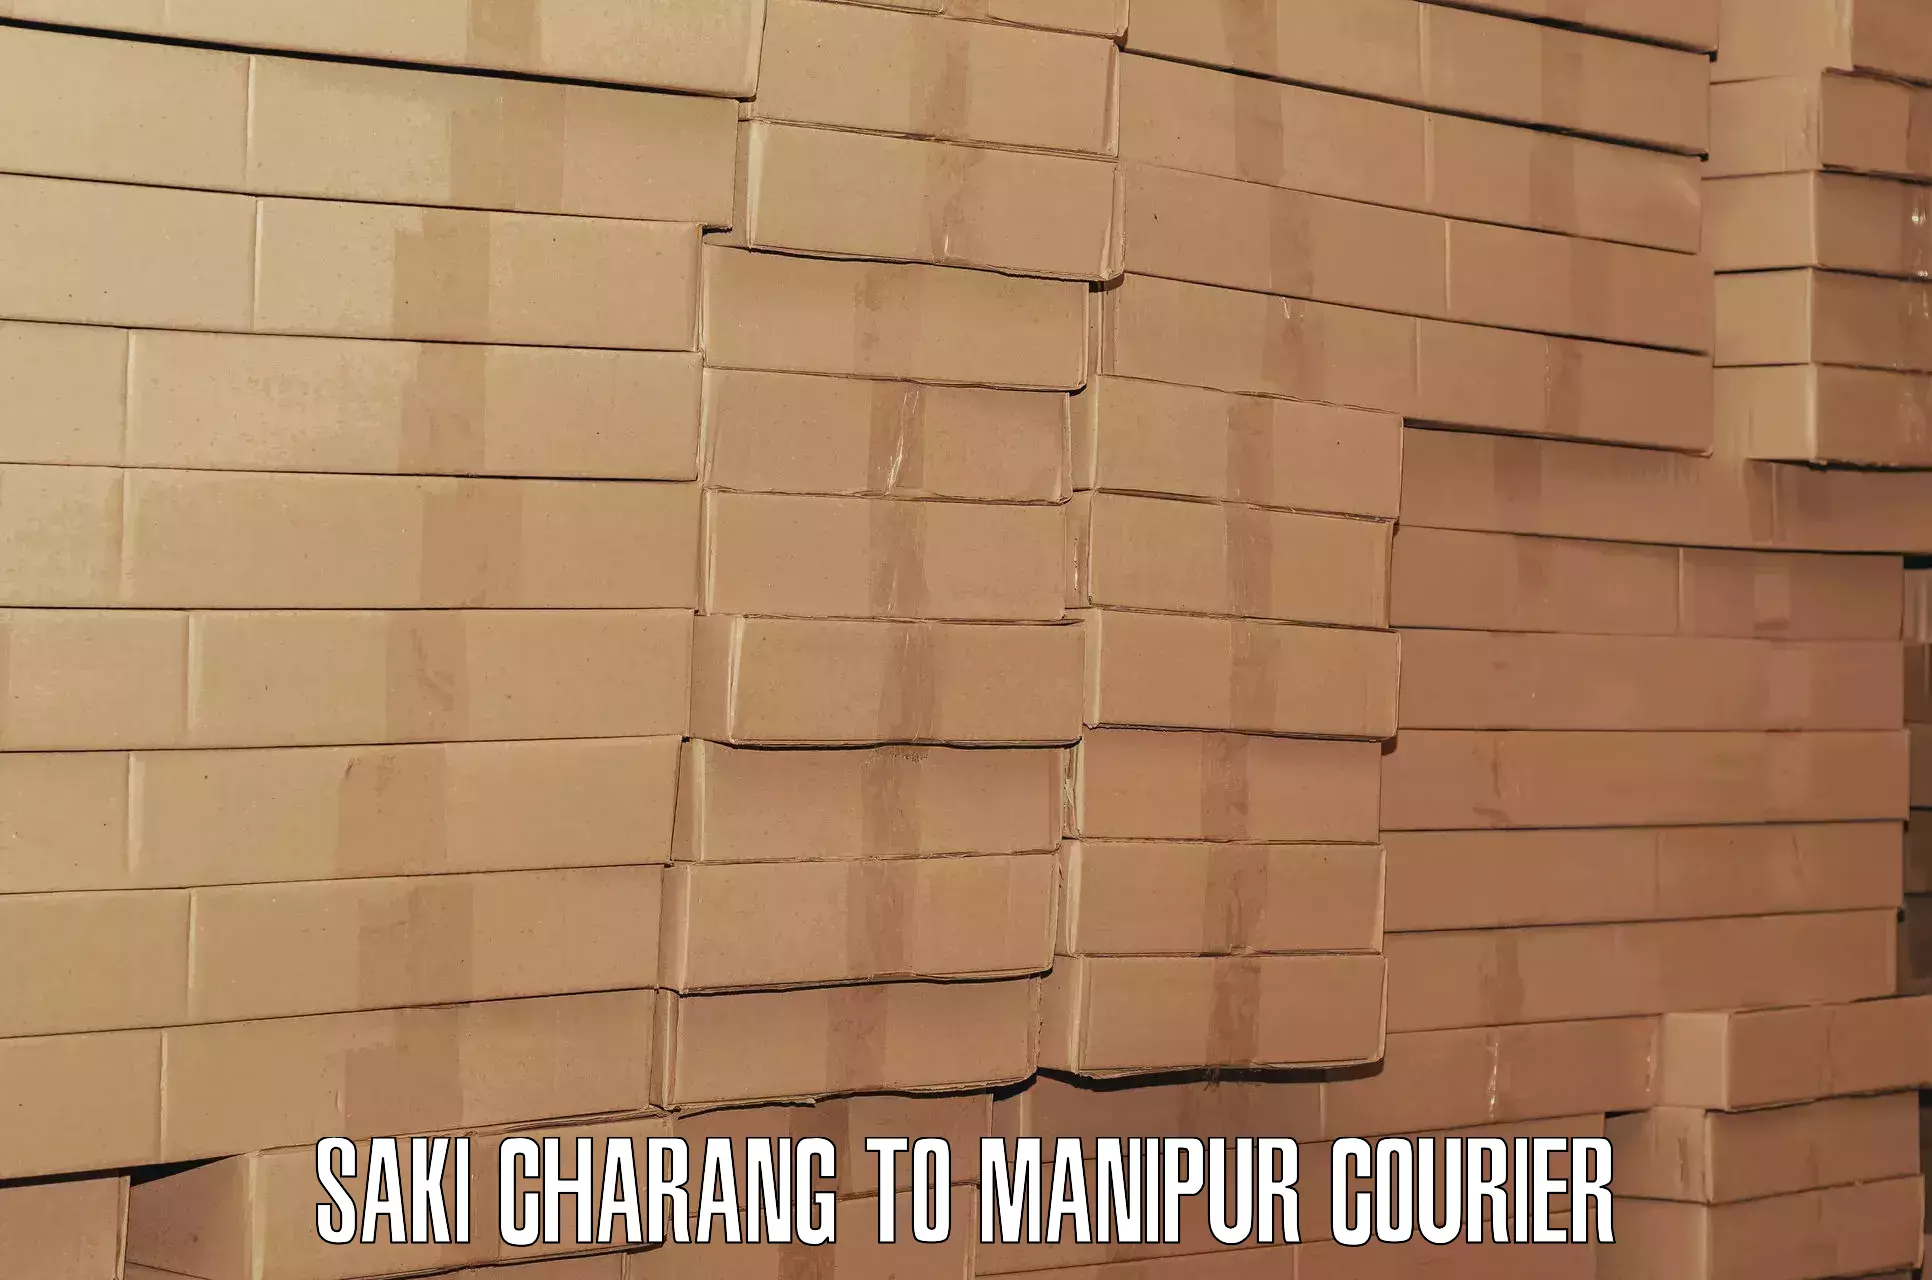 Baggage transport services Saki Charang to Manipur